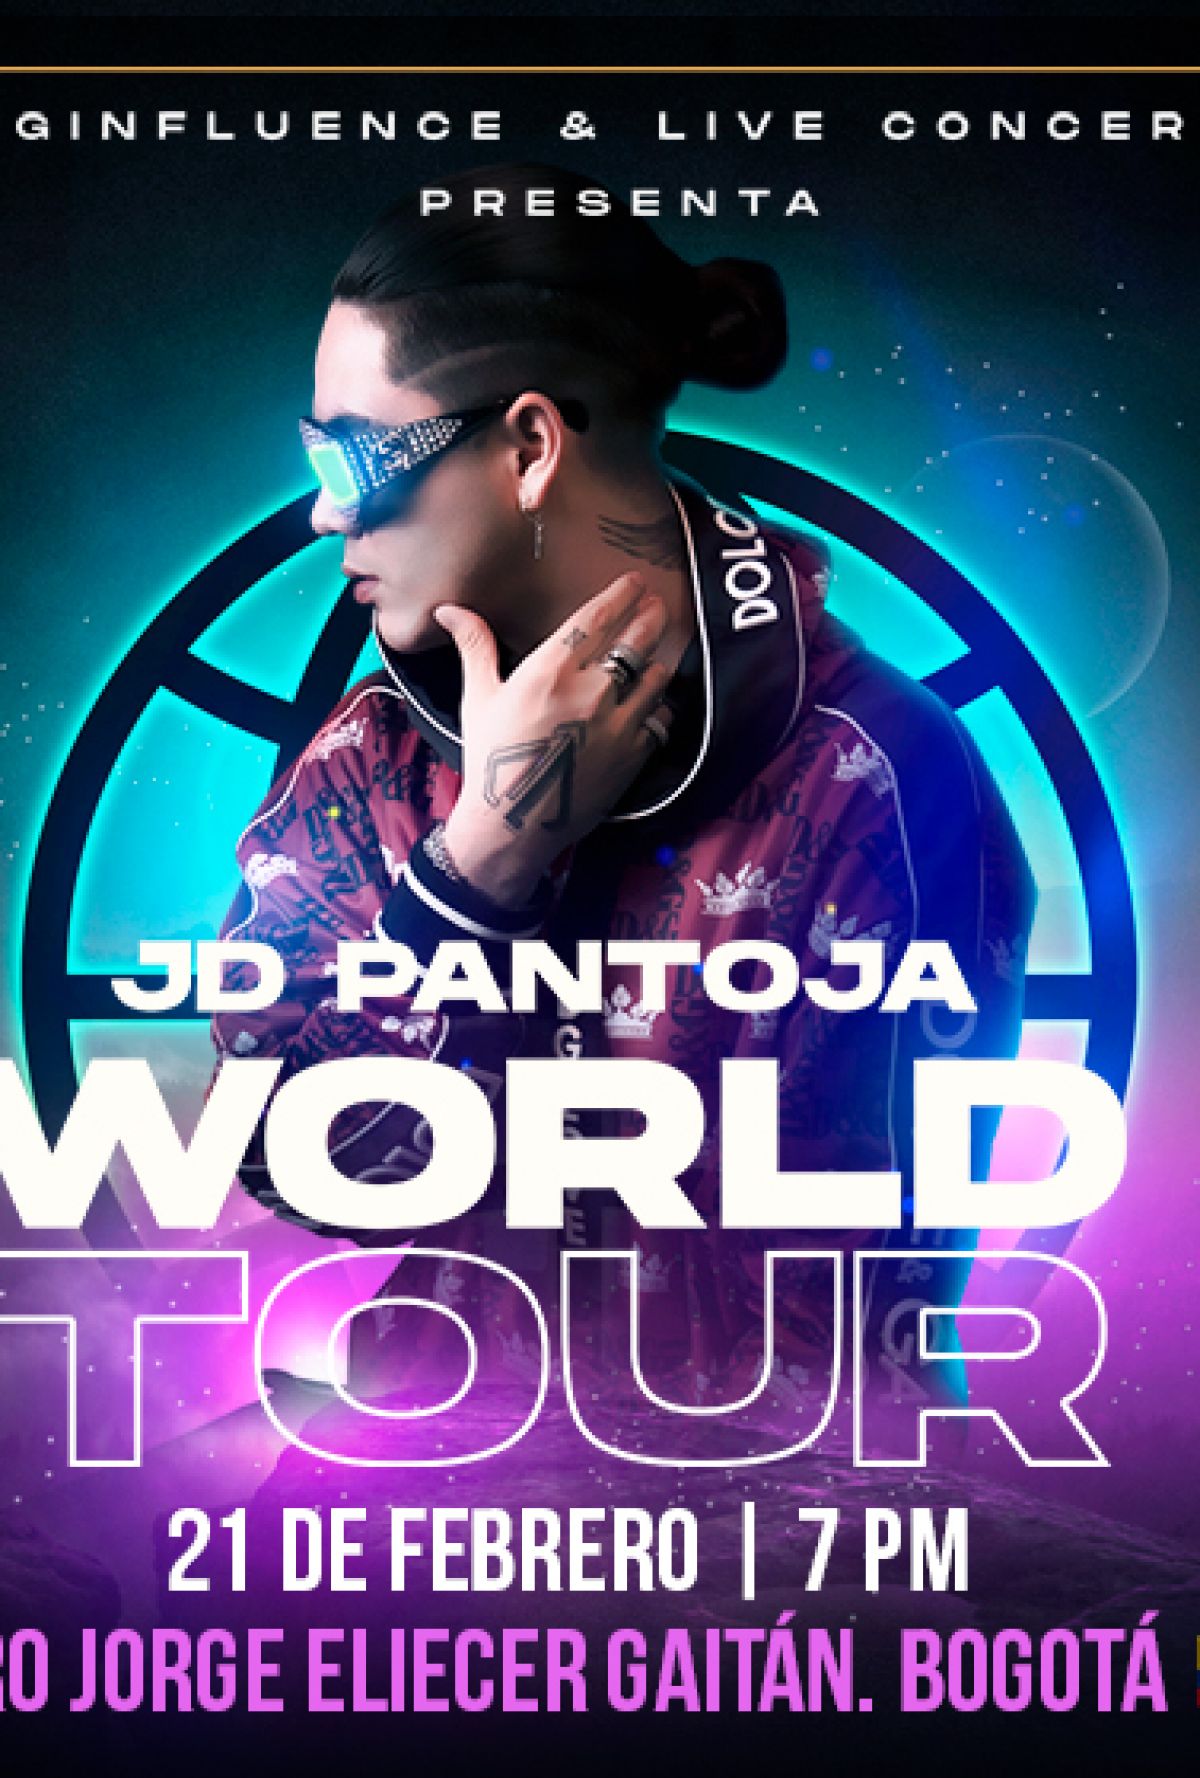 JUAN DE DIOS PANTOJA WORLD TOUR BOGOTÁ